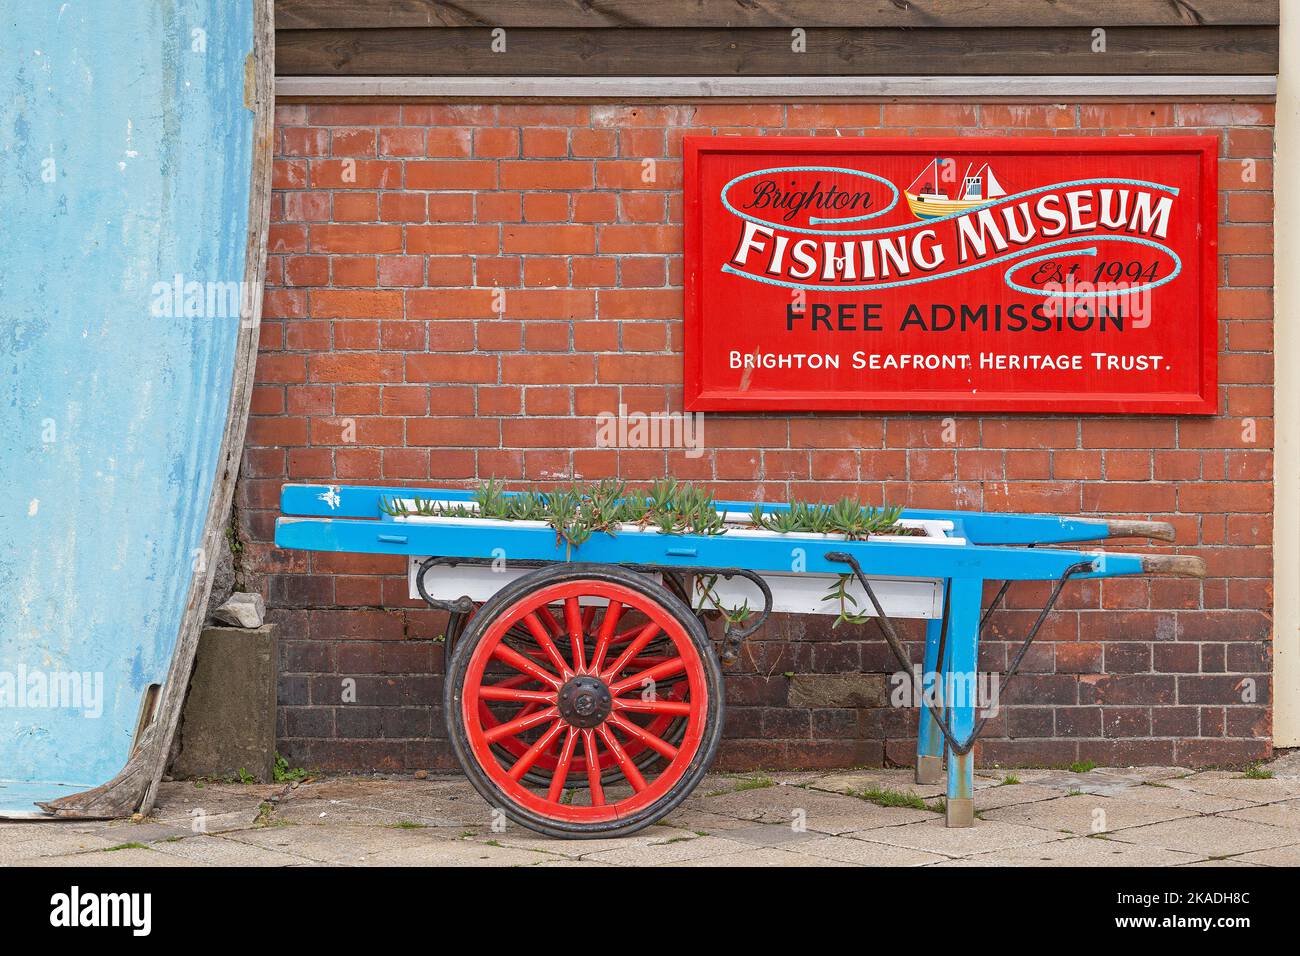 Verkaufskarren, Musée de la pêche, Brighton, Angleterre, Großbritannien | Panier, Musée de la pêche, Brigthon, Angleterre, Grande-Bretagne Banque D'Images